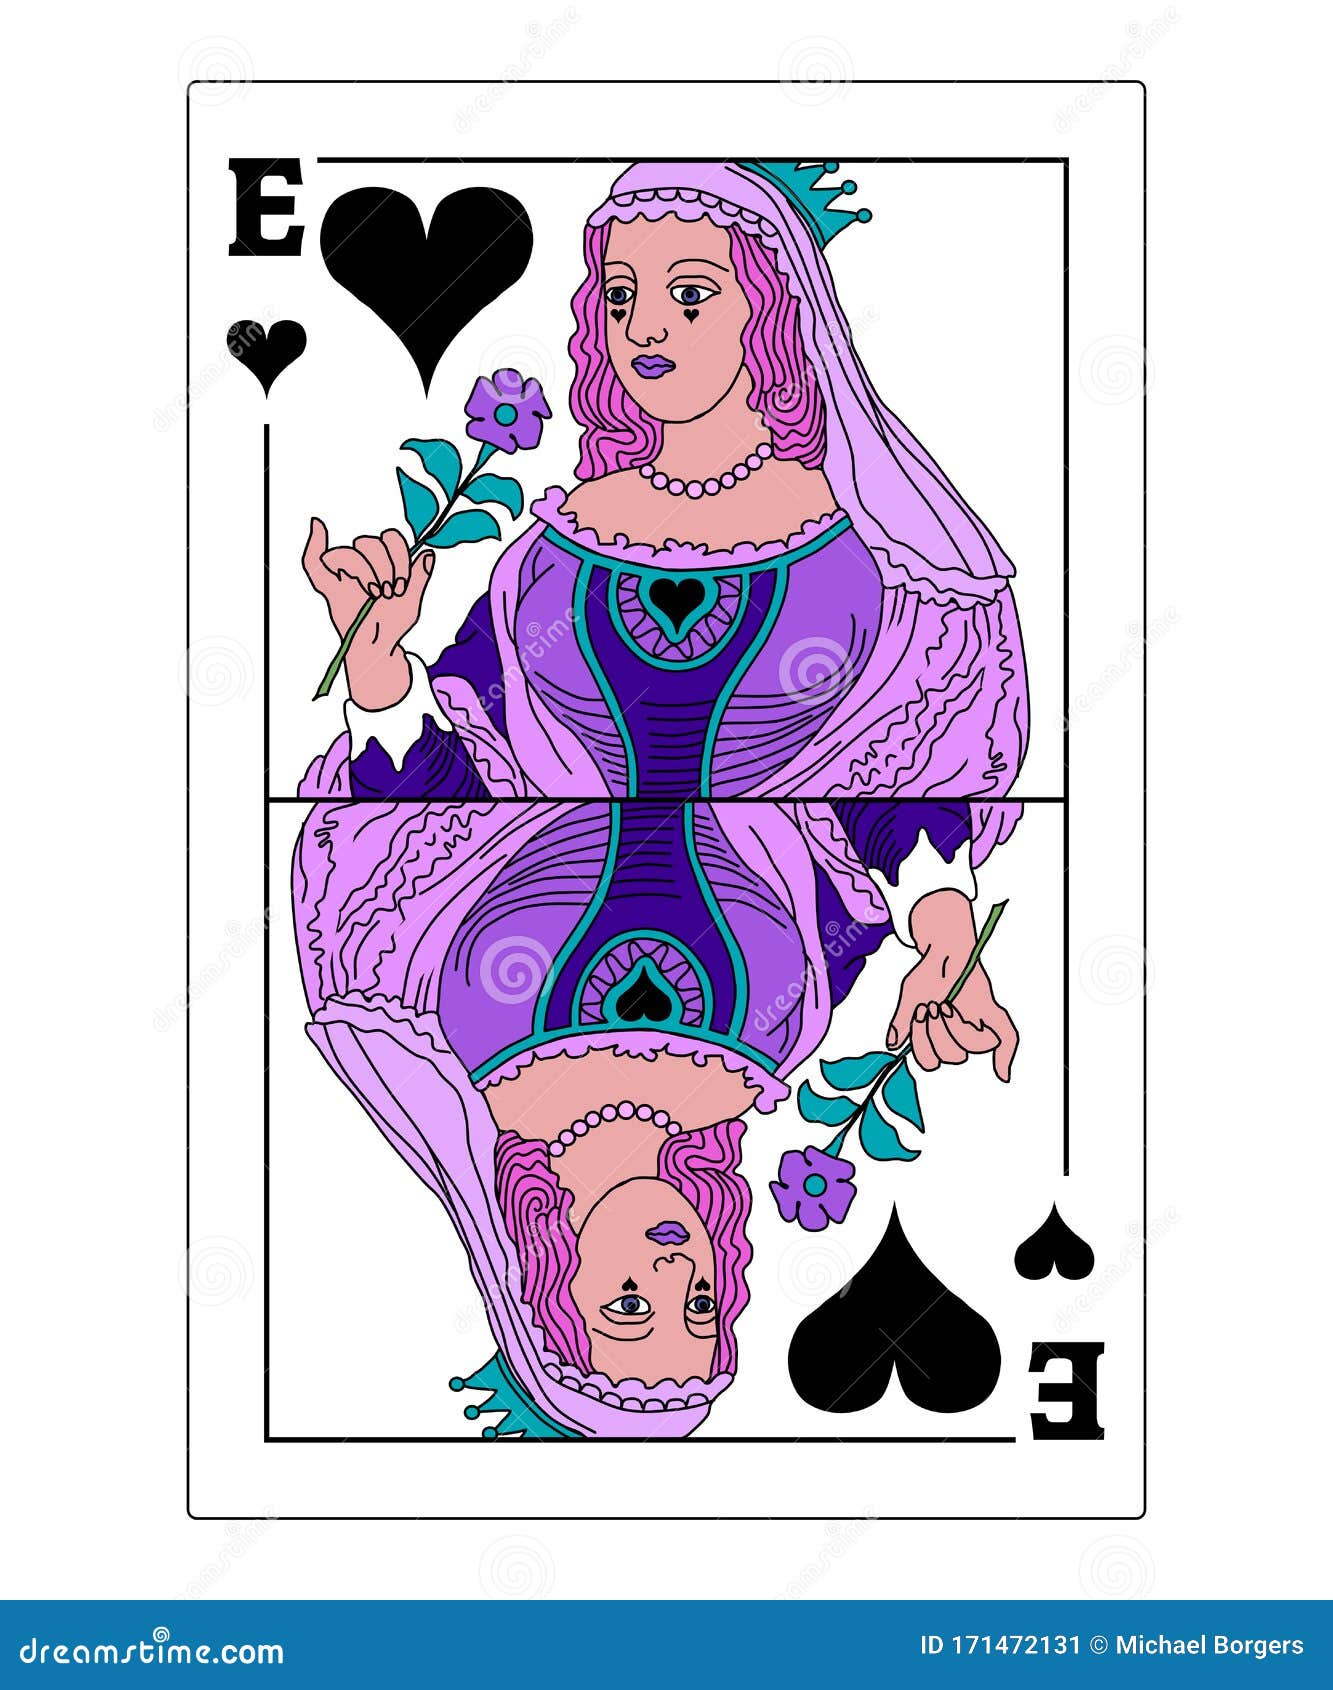 Queen of black hearts